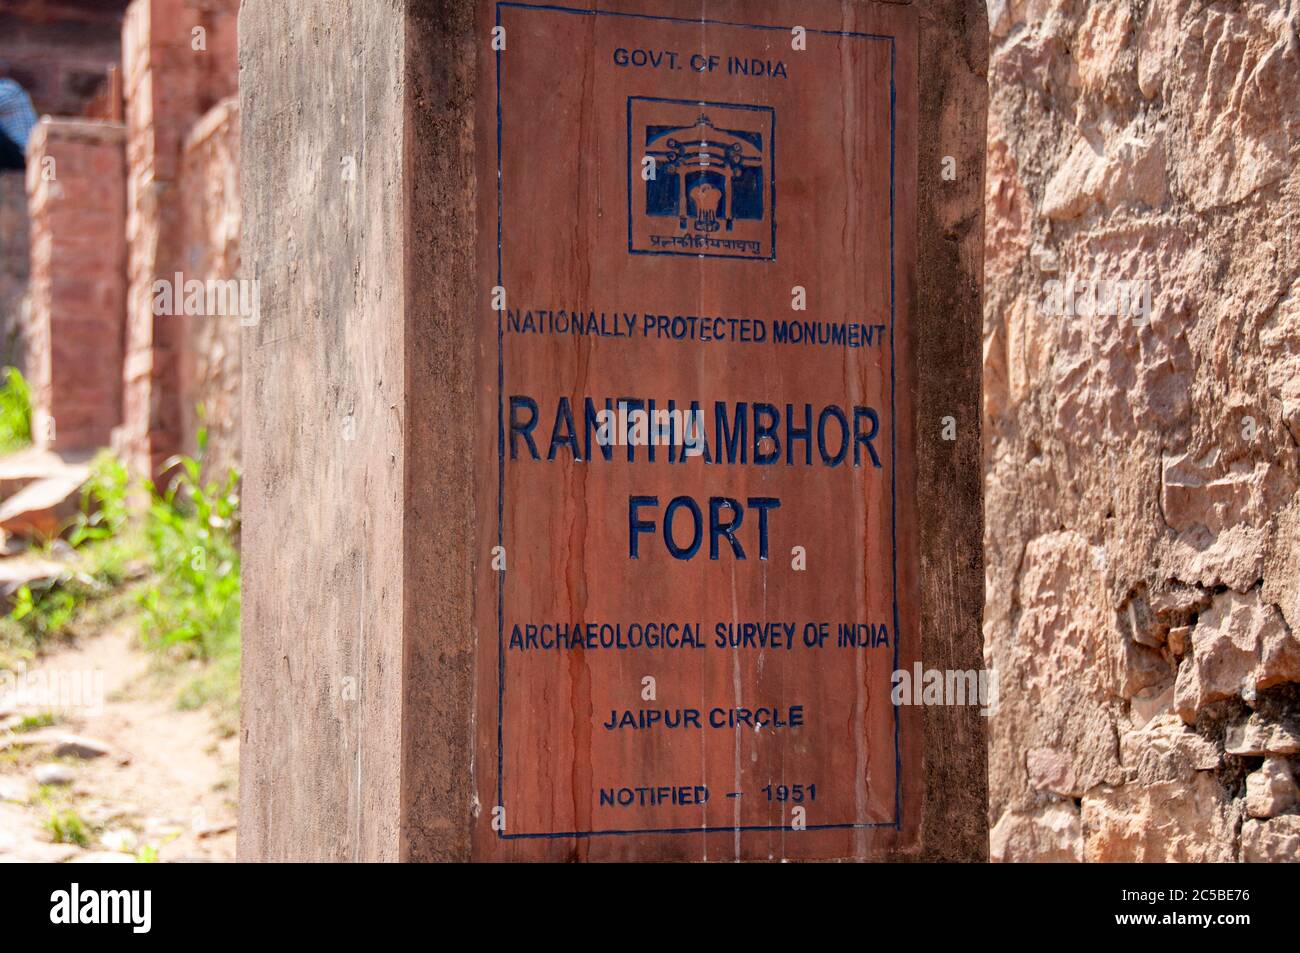 Il Forte di Ranthambore si trova all'interno del Parco Nazionale di Ranthambore, vicino alla città di Sawai Madhopur, il parco essendo l'ex terreno di caccia del Maharaja Foto Stock